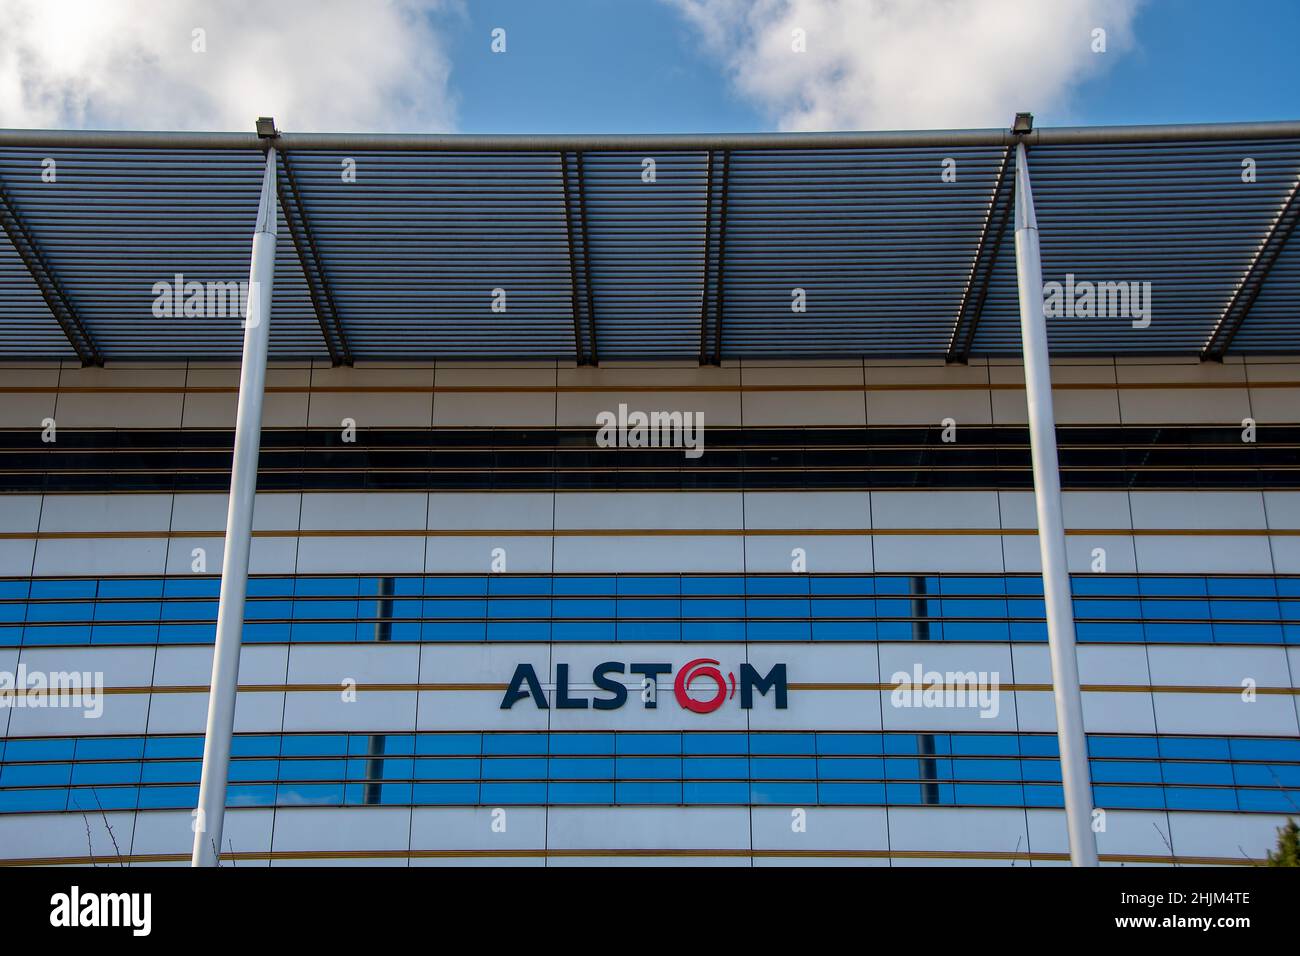 Vue extérieure du siège d'Alstom, une multinationale française spécialisée principalement dans le transport ferroviaire (train, tramway et métro) Banque D'Images